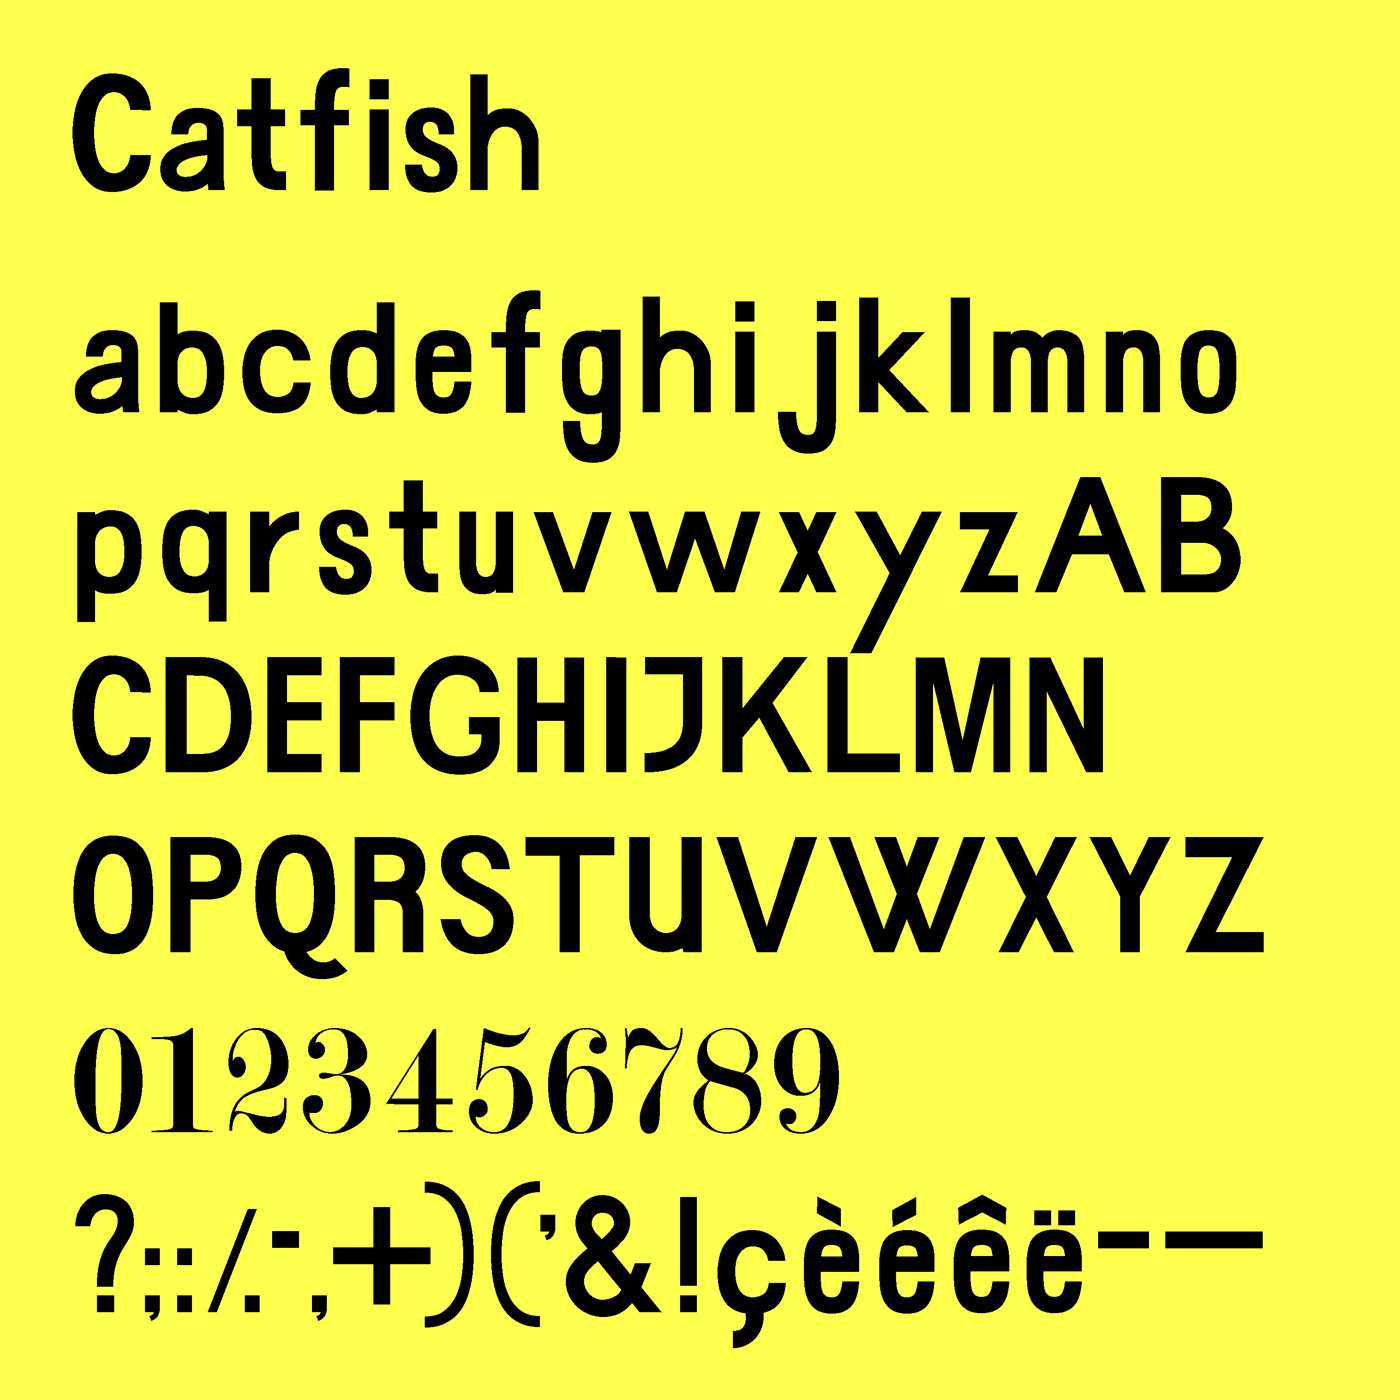 Catfish typeface designed by Thomas Bush